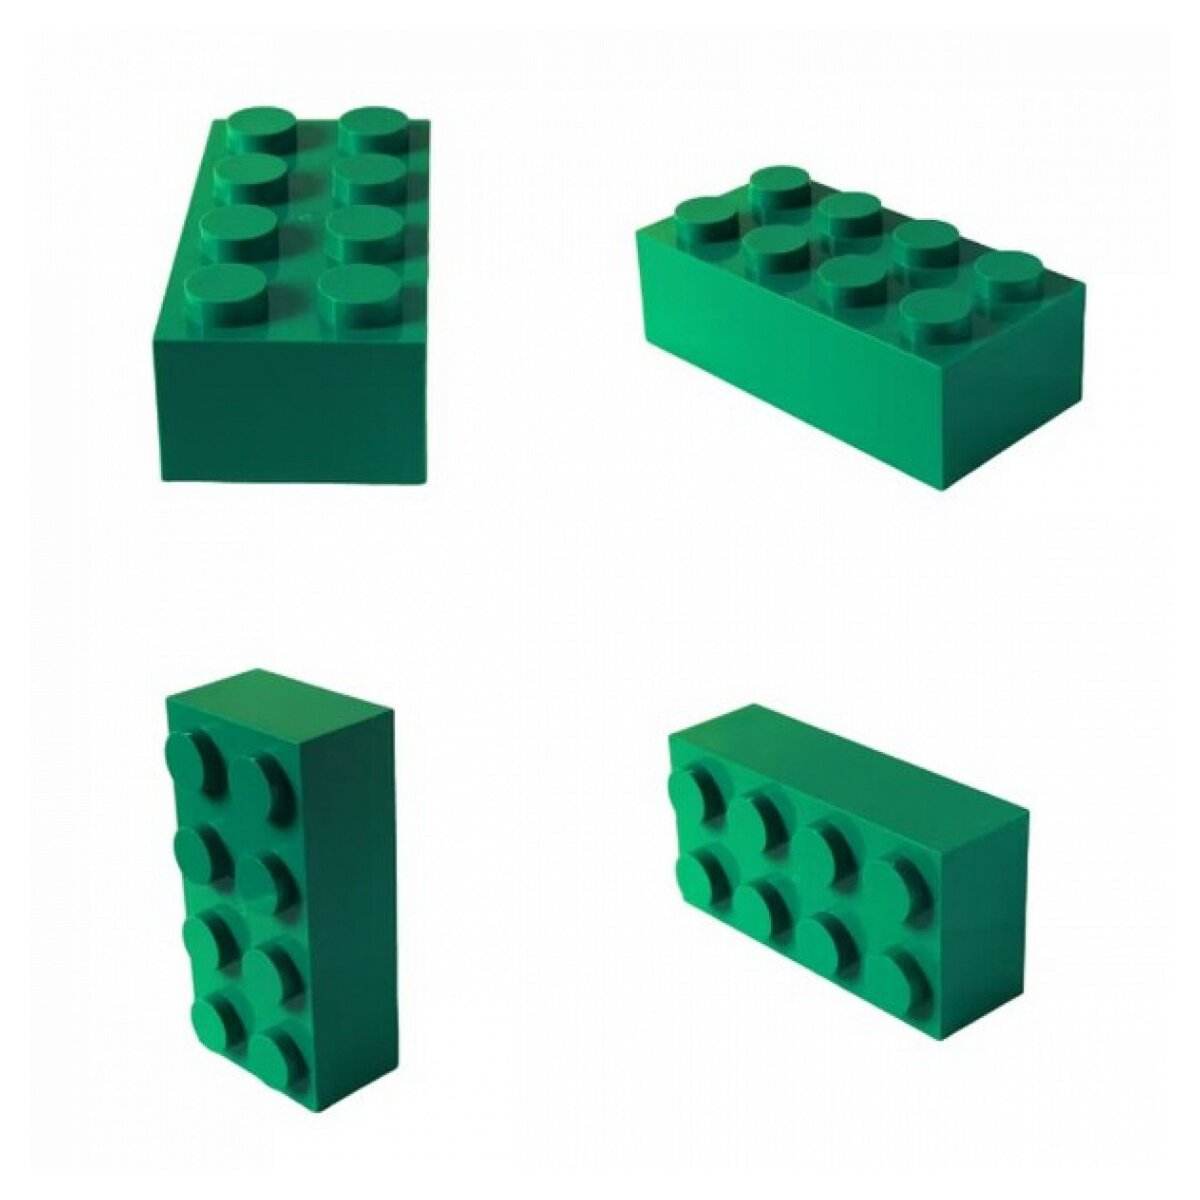  brique géante - Brick-it 8 plots - couleur vert